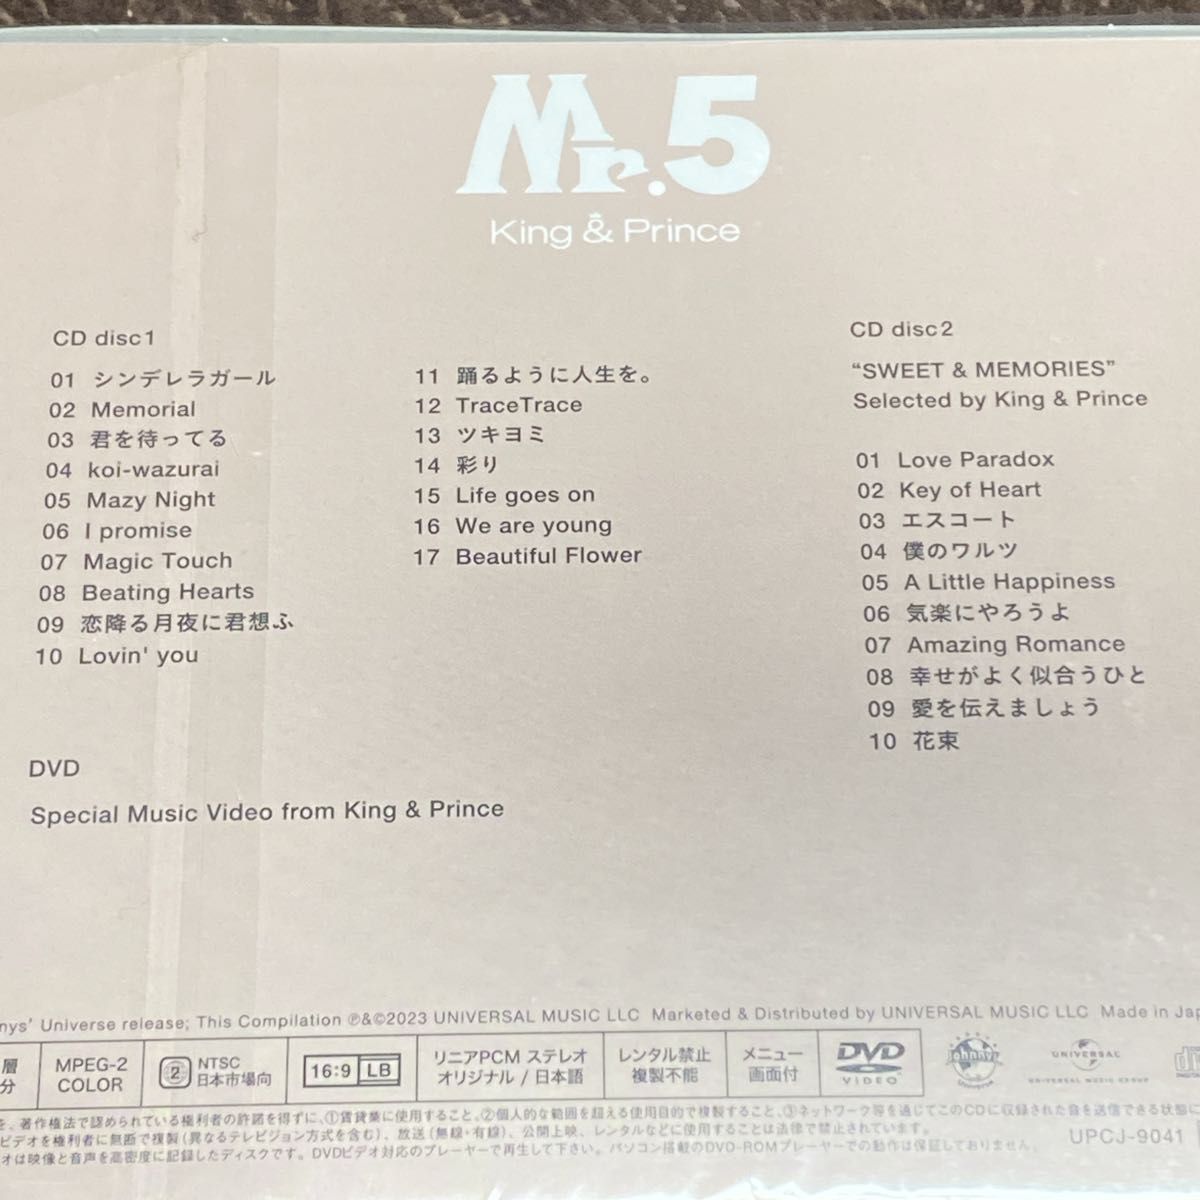 【King & Prince】Mr.5(初回限定盤A)